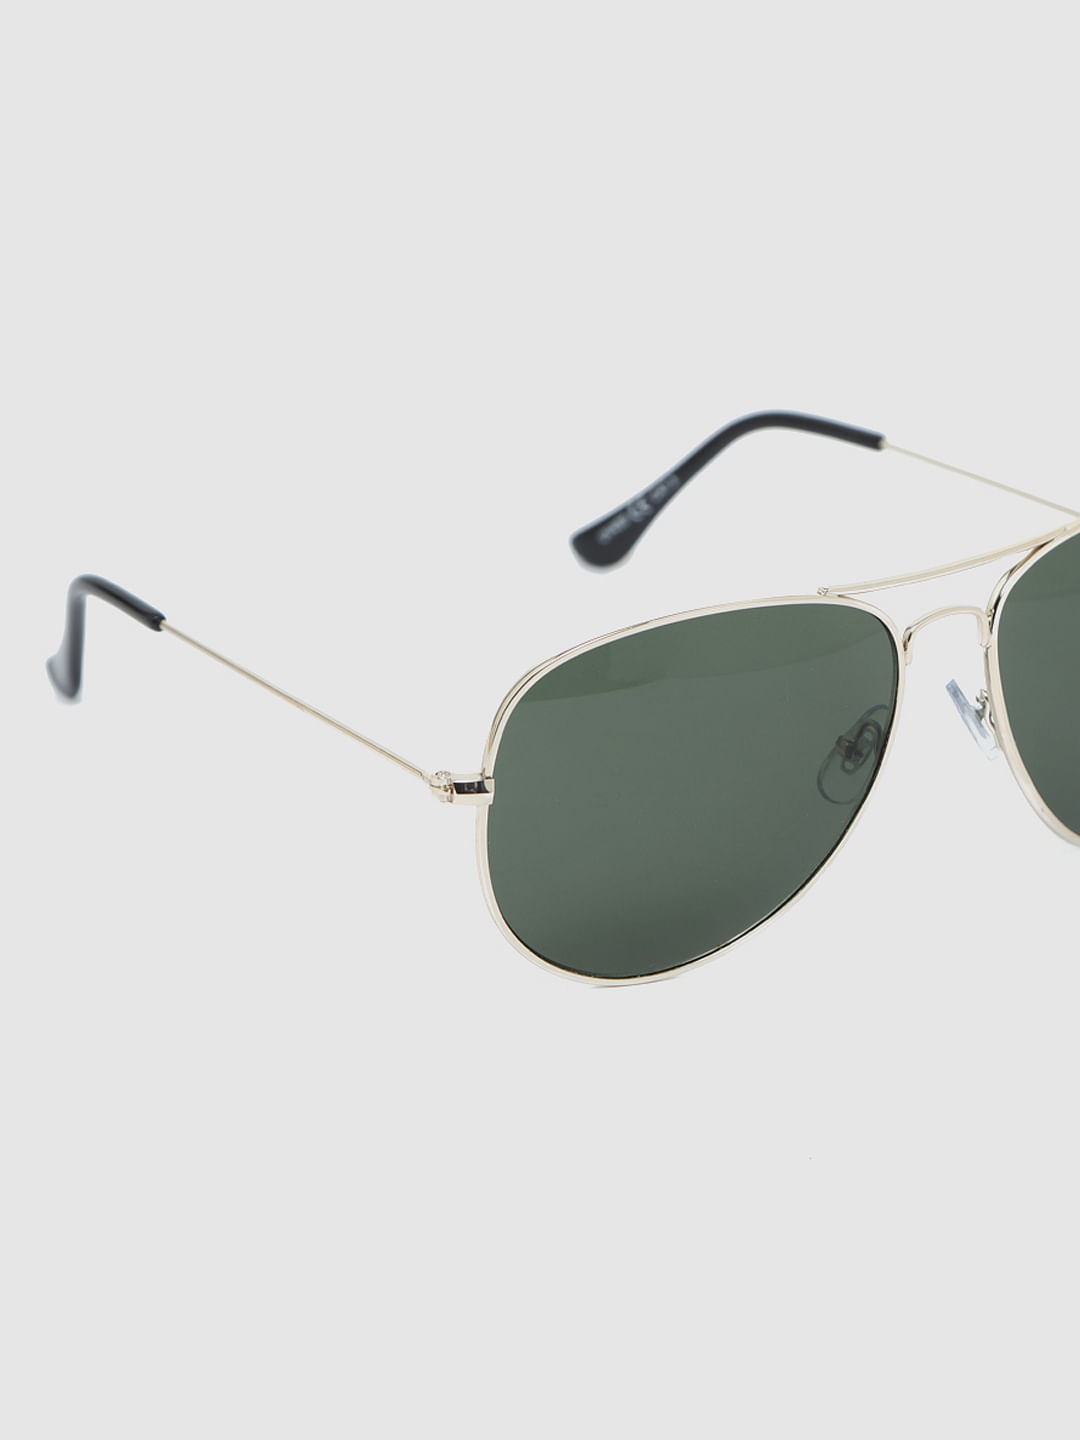 Details 136+ green aviator sunglasses cheap best